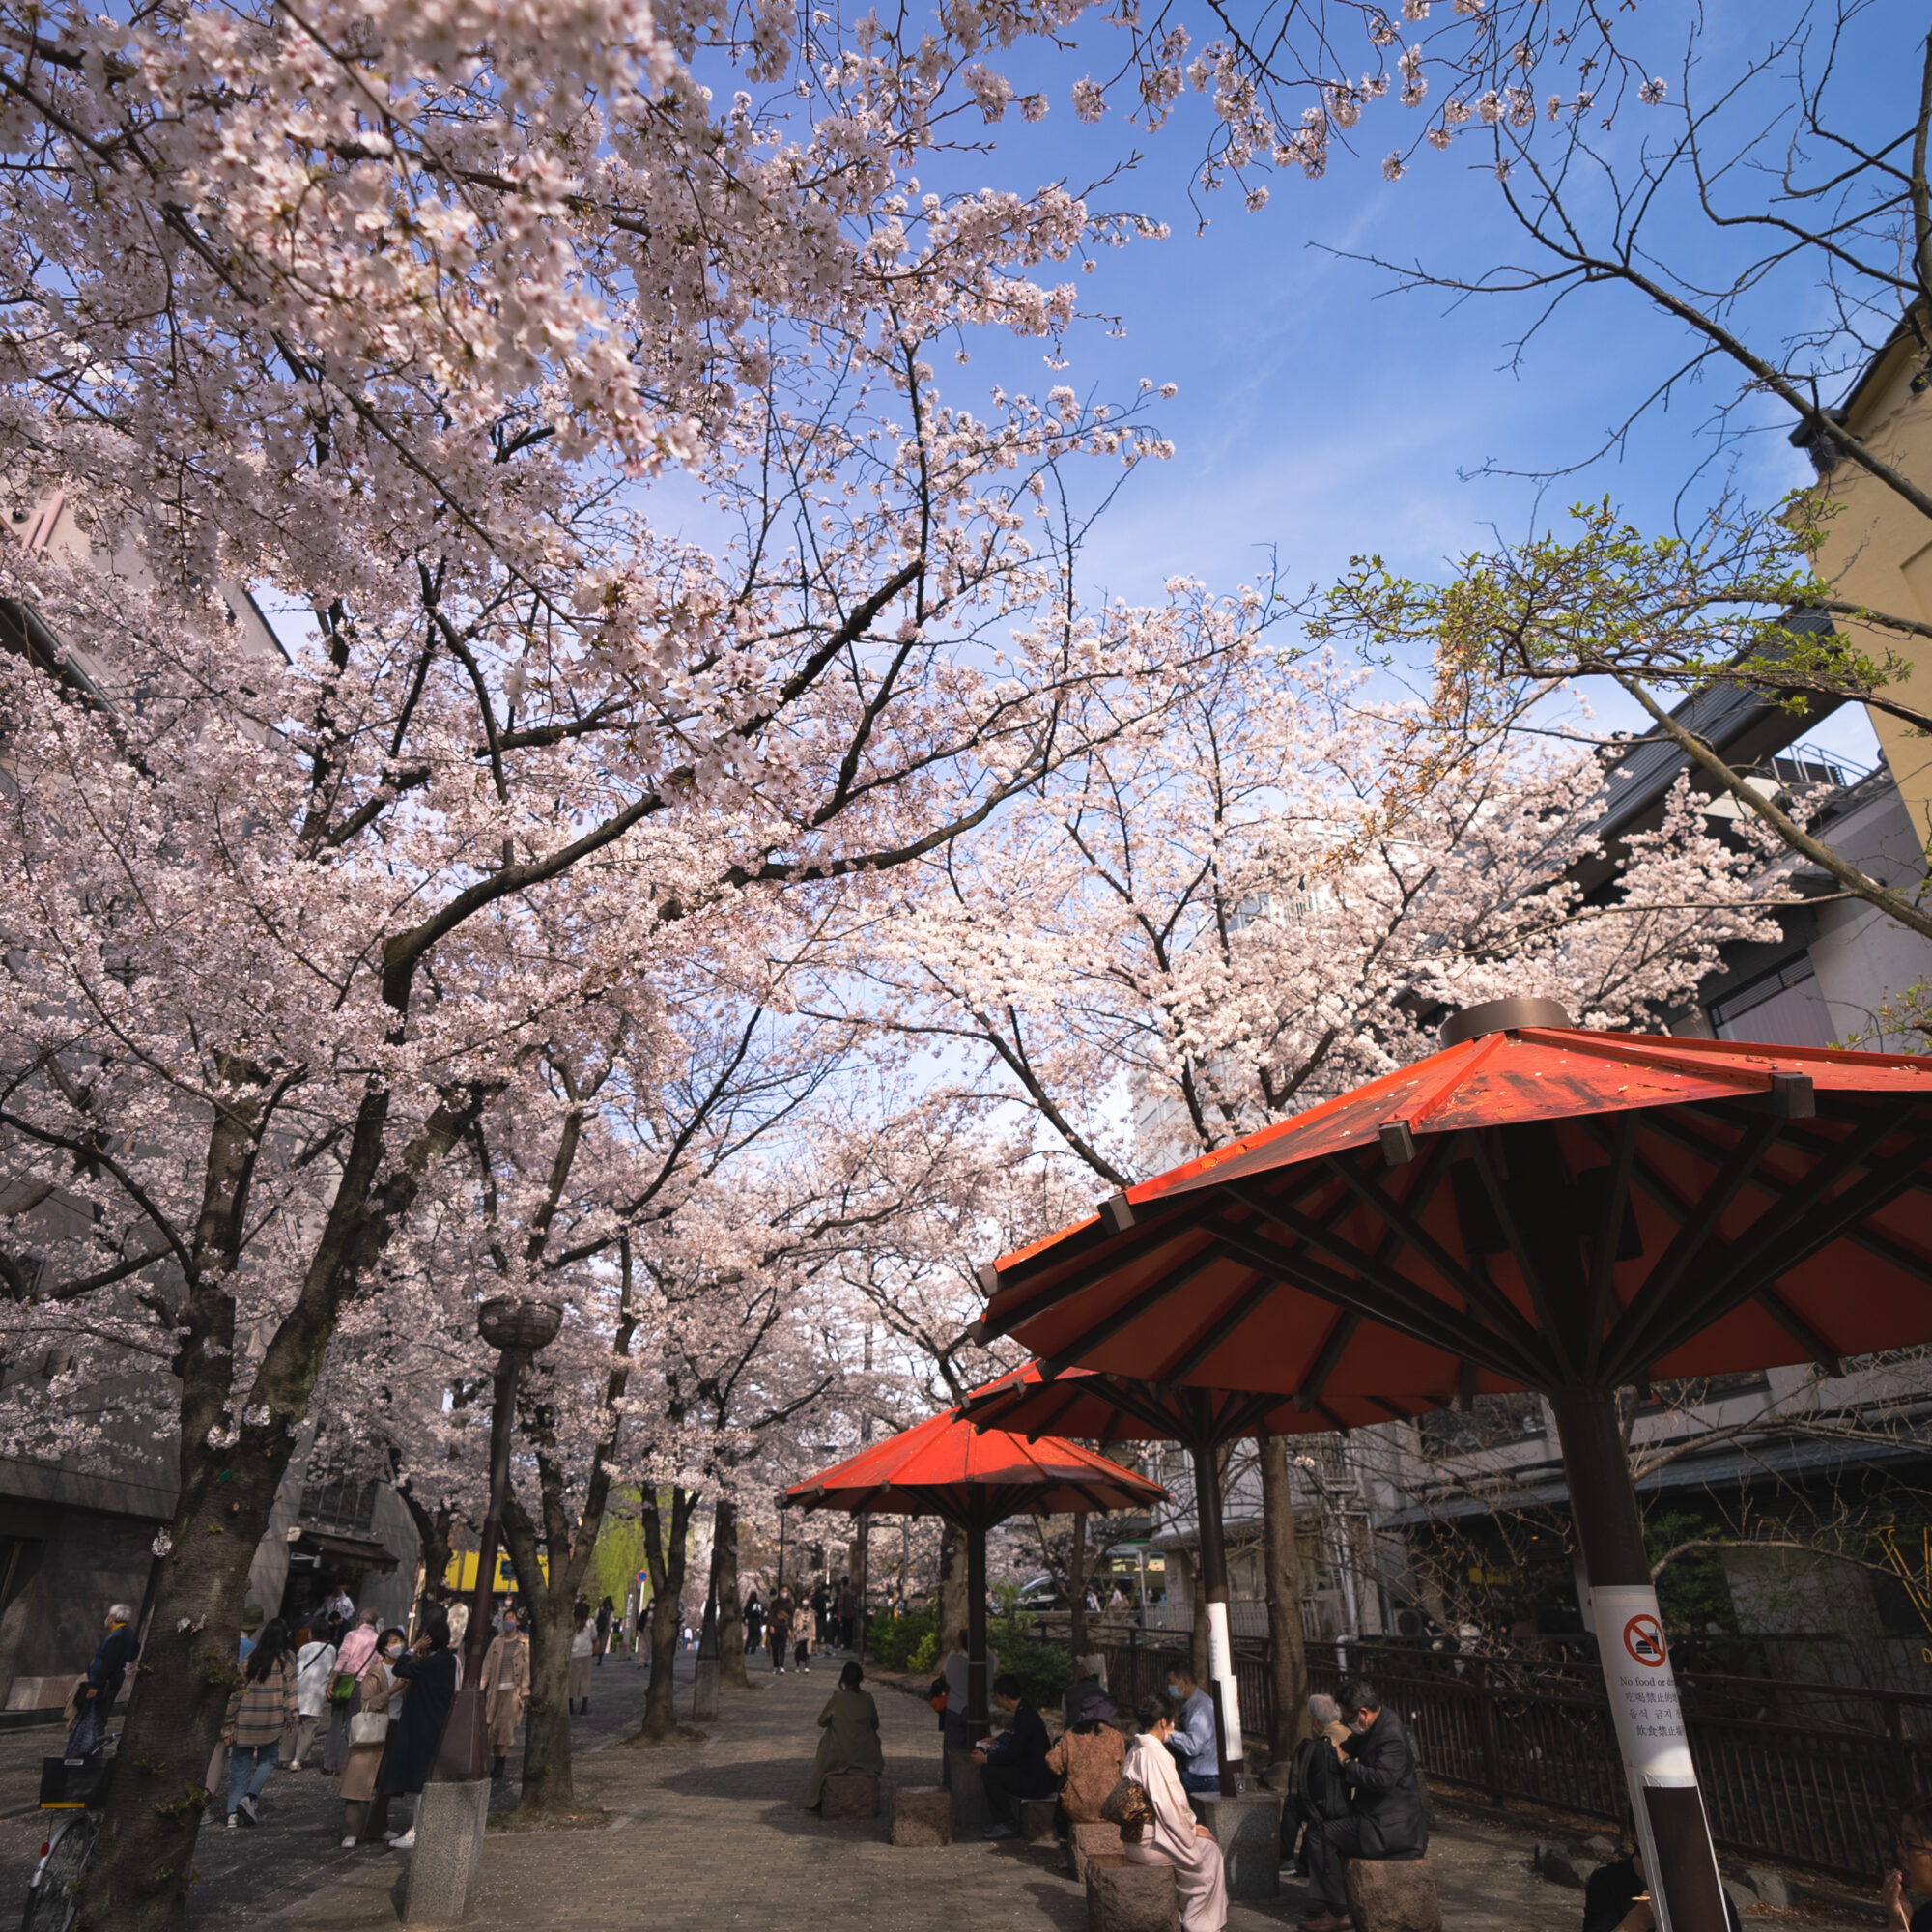 川端通りから白川筋への入り口付近にて、沢山の大きな桜の木と、沢山の大きな赤い傘と、観光を楽しむ人達 2021年3月撮影